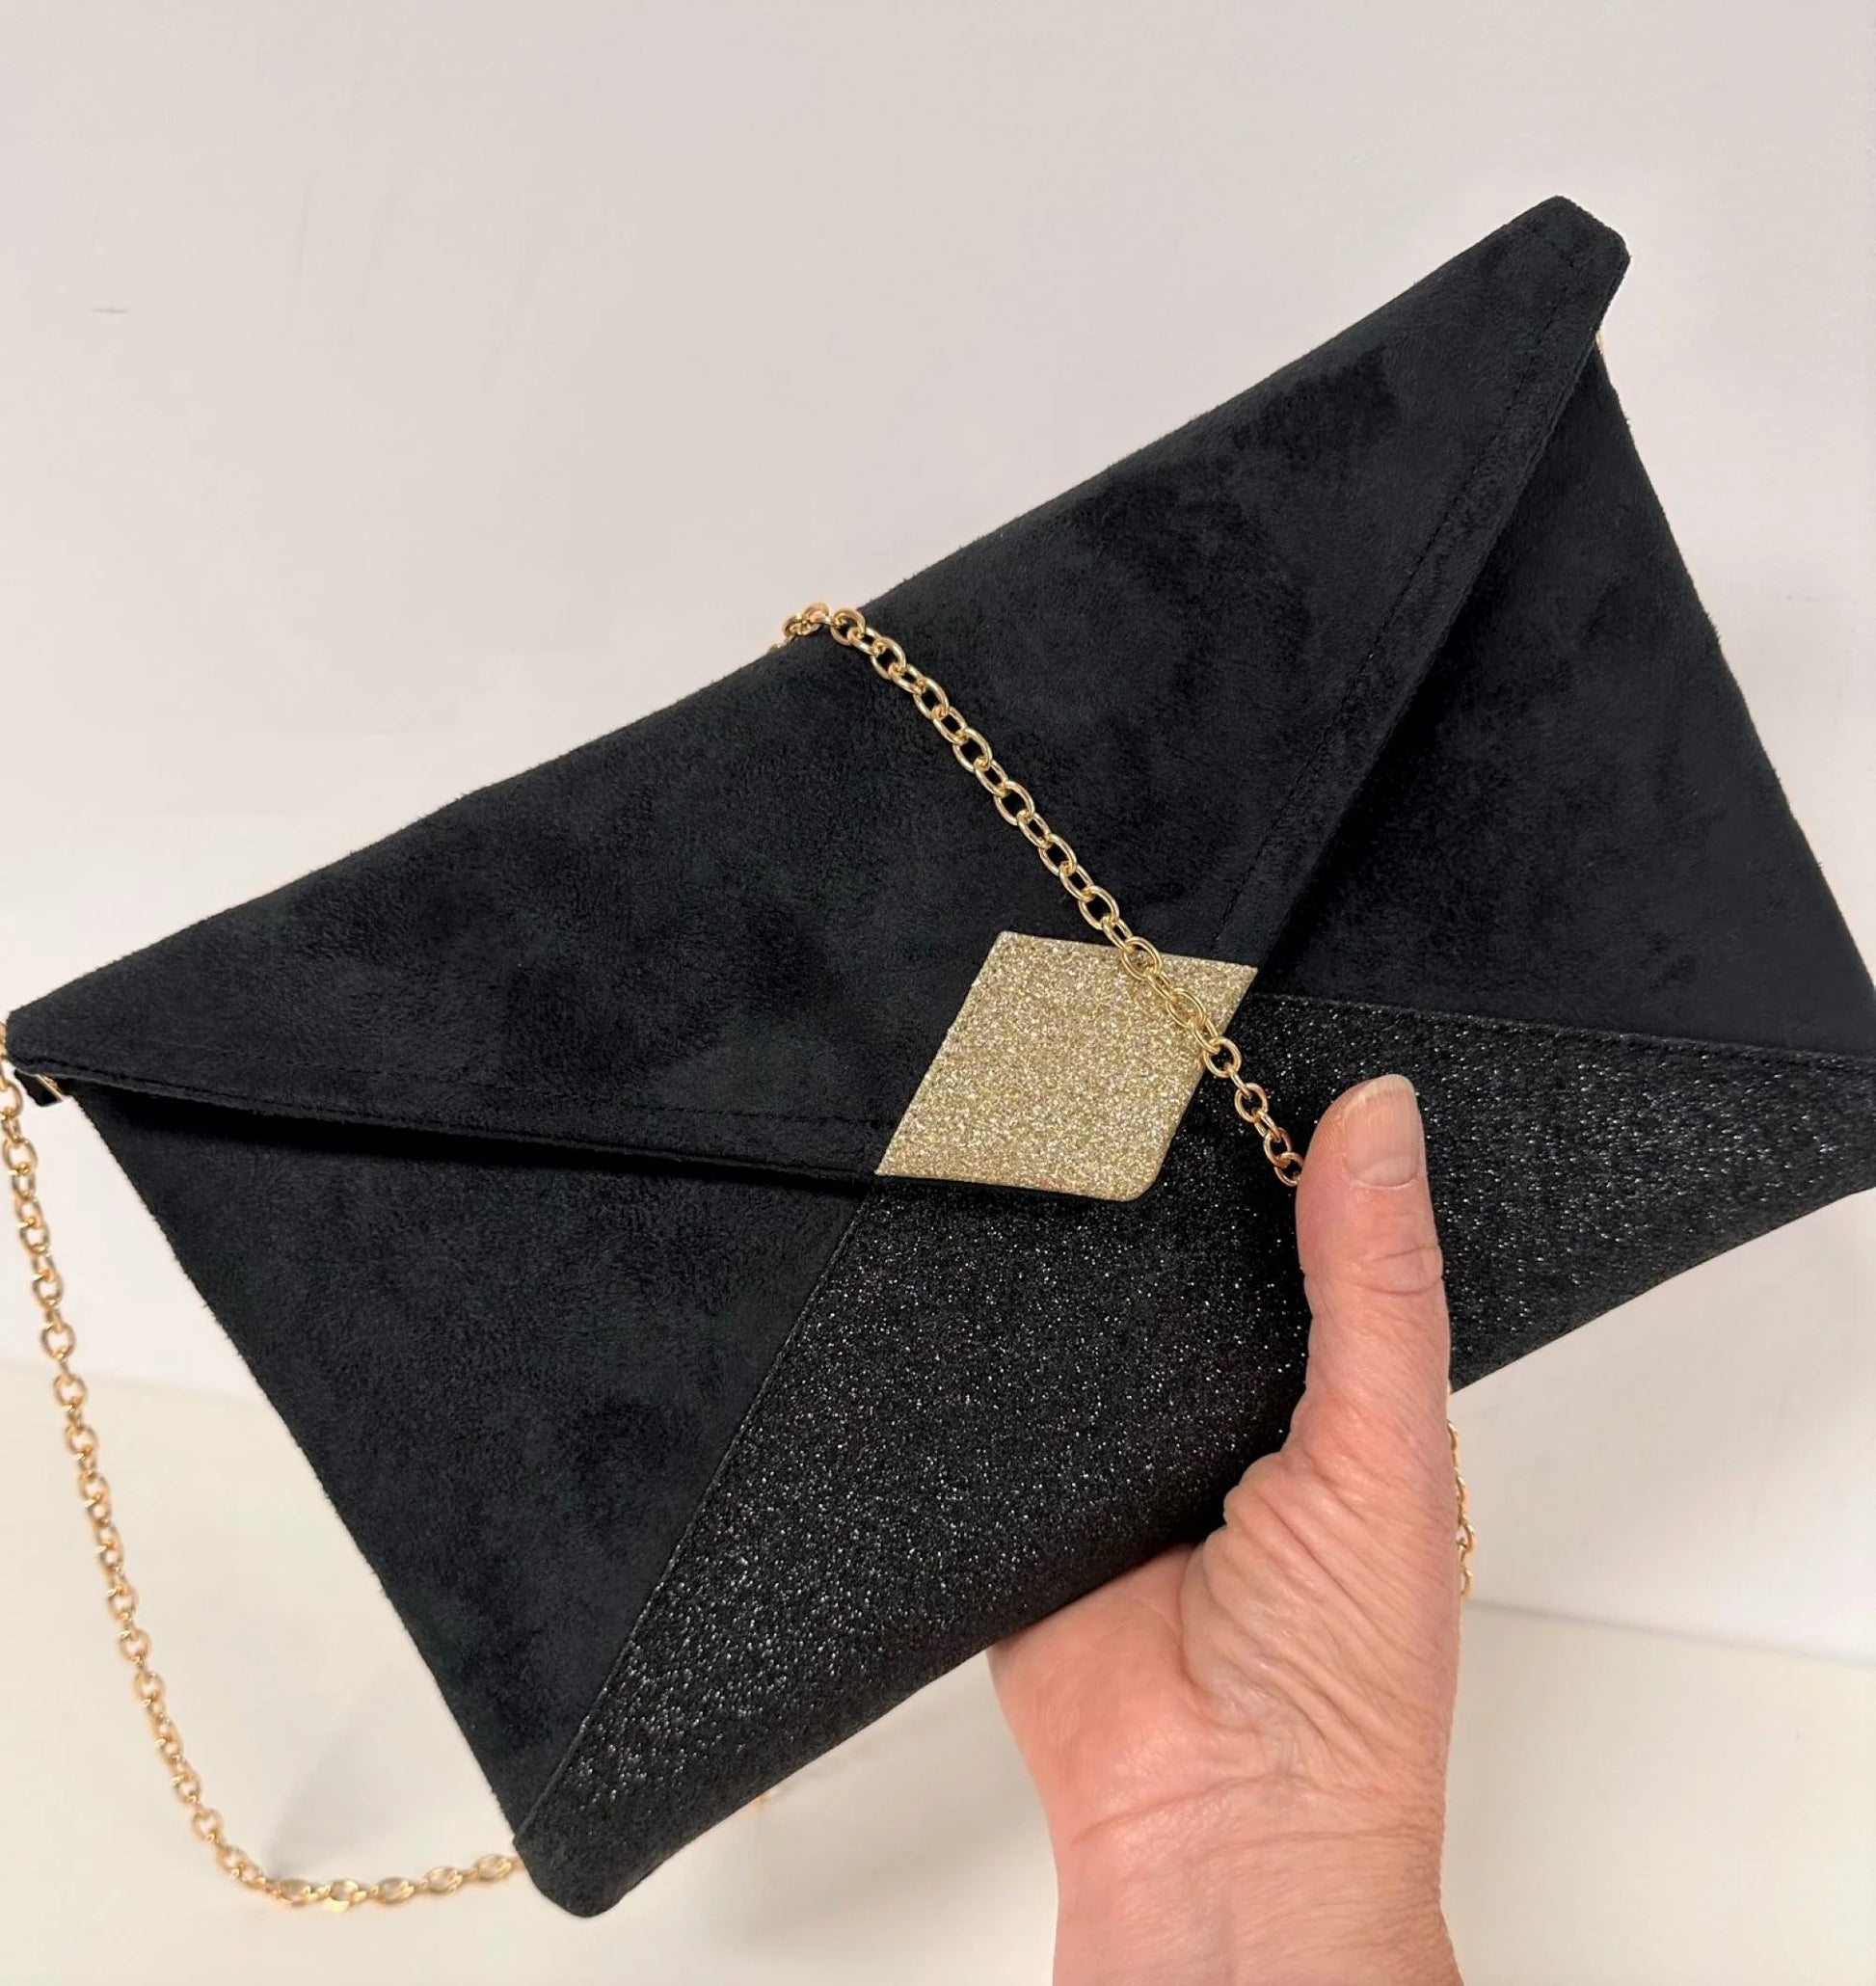 Le sac pochette Isa noir et doré à paillettes, tenu en main.